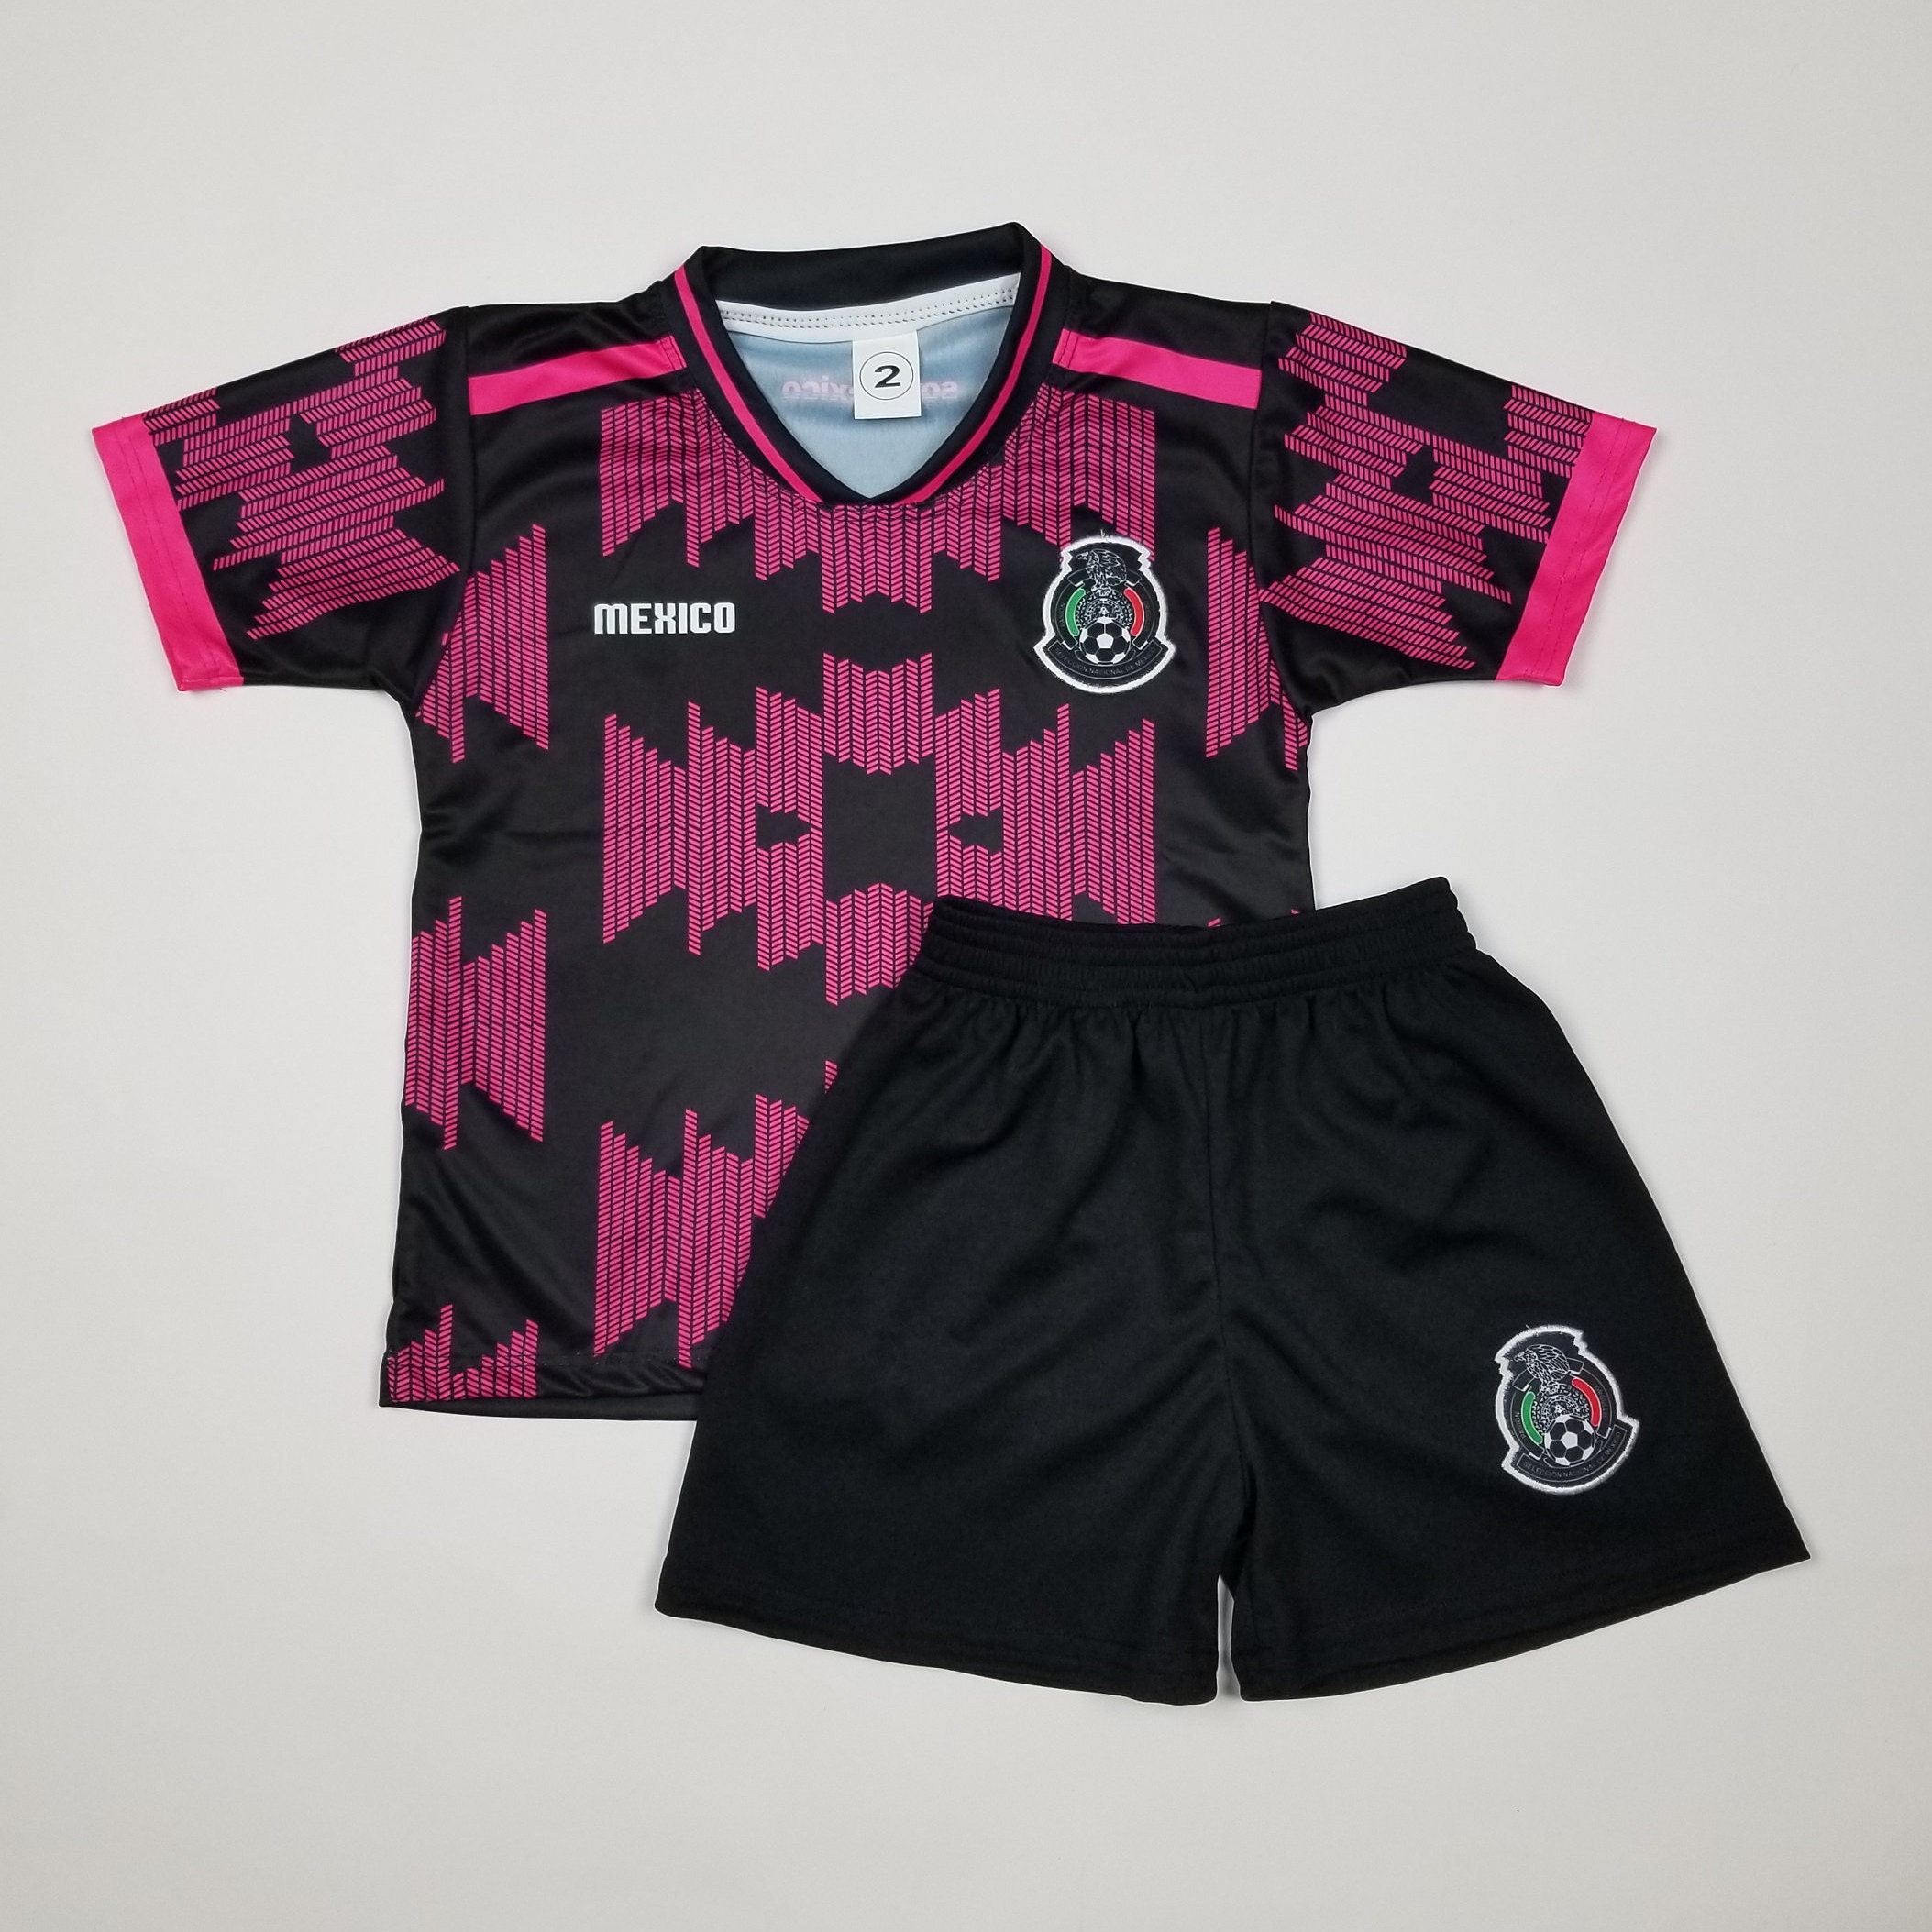 New Mexico Kid's Soccer Jersey and shorts Futbol Mexico 